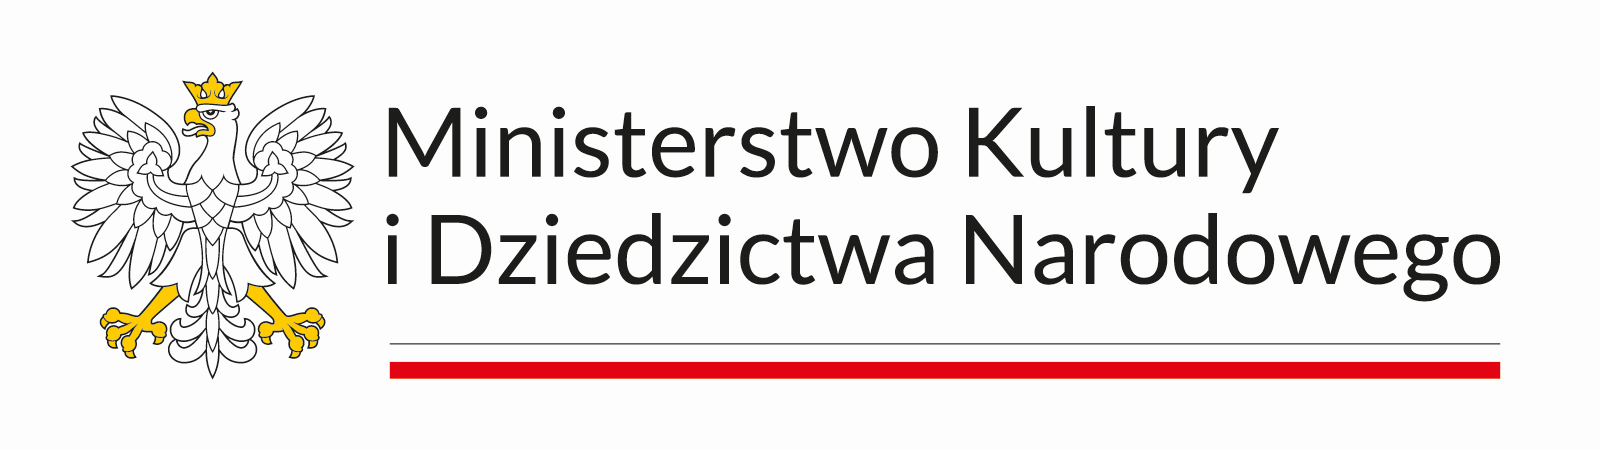 Logo Ministerstwo Kultury i Dziedzictwa Narodowego - godło i napis